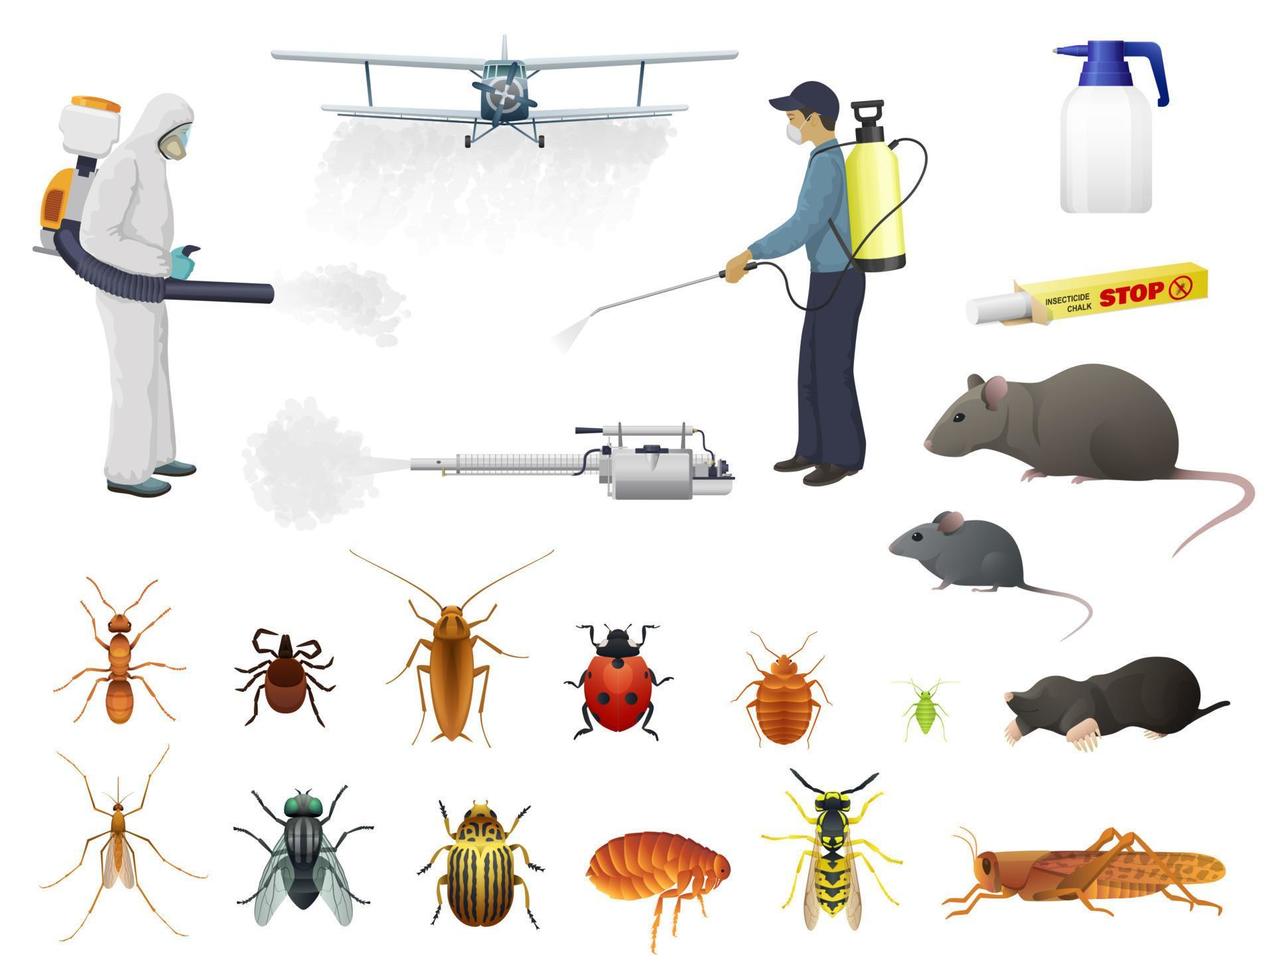 desinfección, control de plagas exterminio de insectos vector